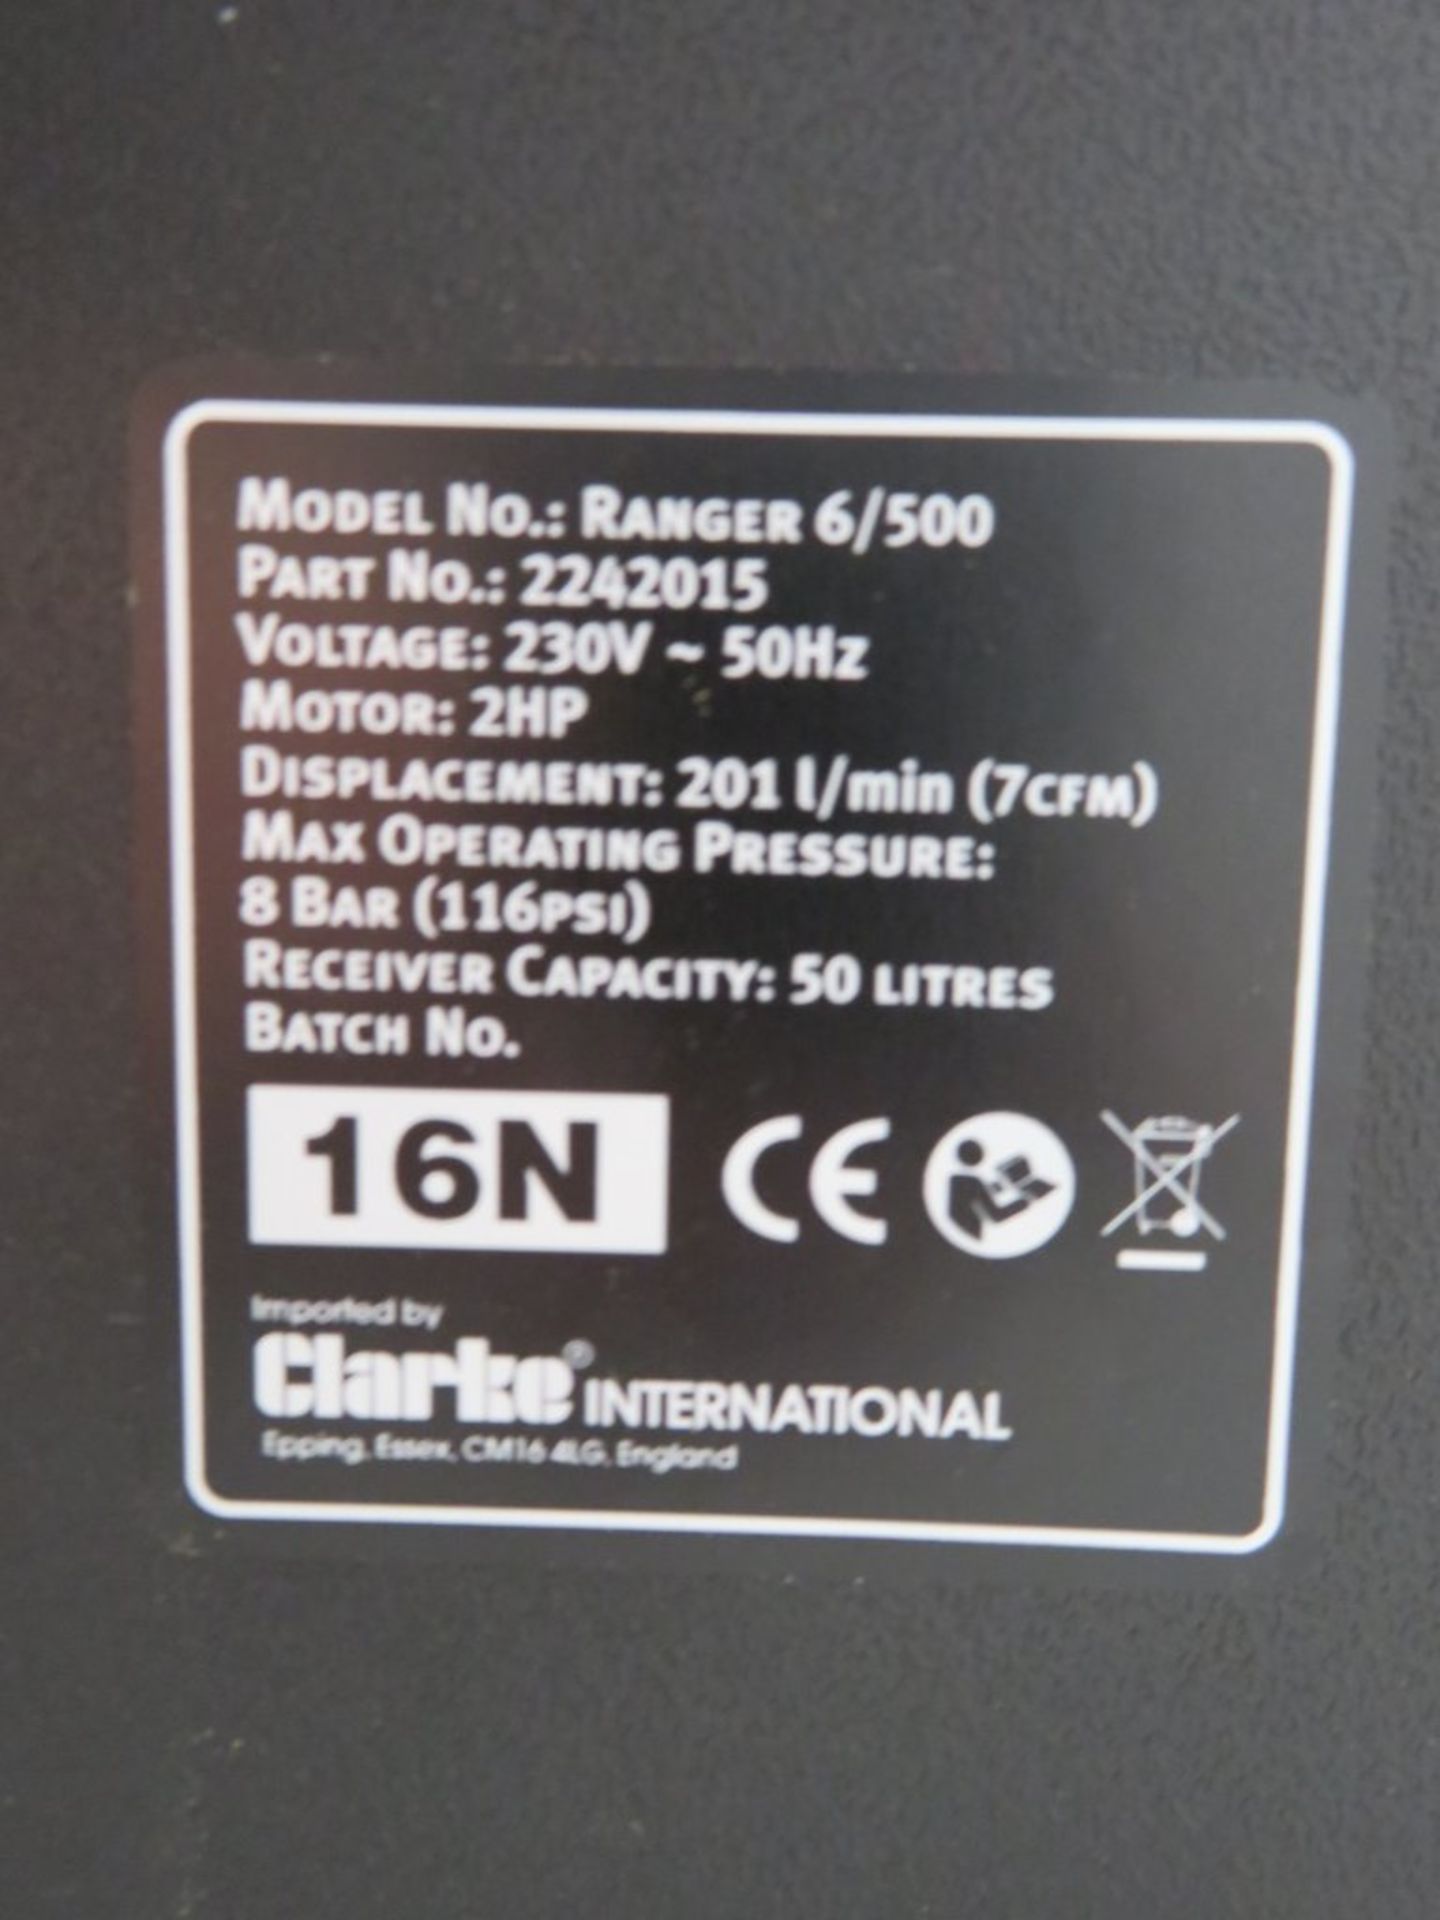 Clarke 7cfm 50Litre 2HP Oil Free Air Compressor. Model: Ranger 6/500. 230v. - Image 8 of 11